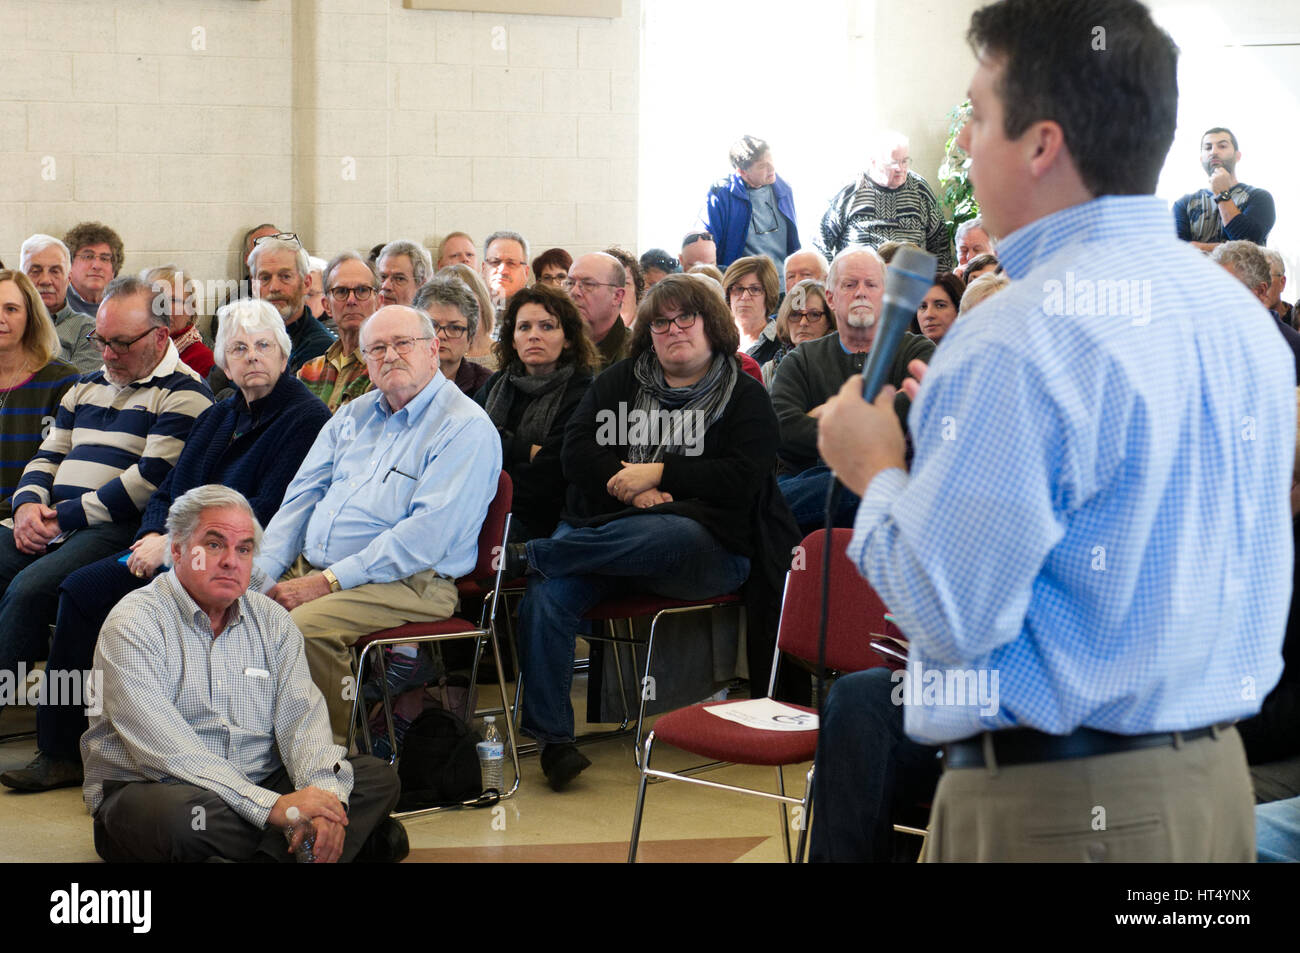 Community-Mitglieder hören als ein gewählter Vertreter reagiert auf Fragen aus dem Publikum am 26. Februar 2017 Rathaus in Pennsylvania, USA. Stockfoto